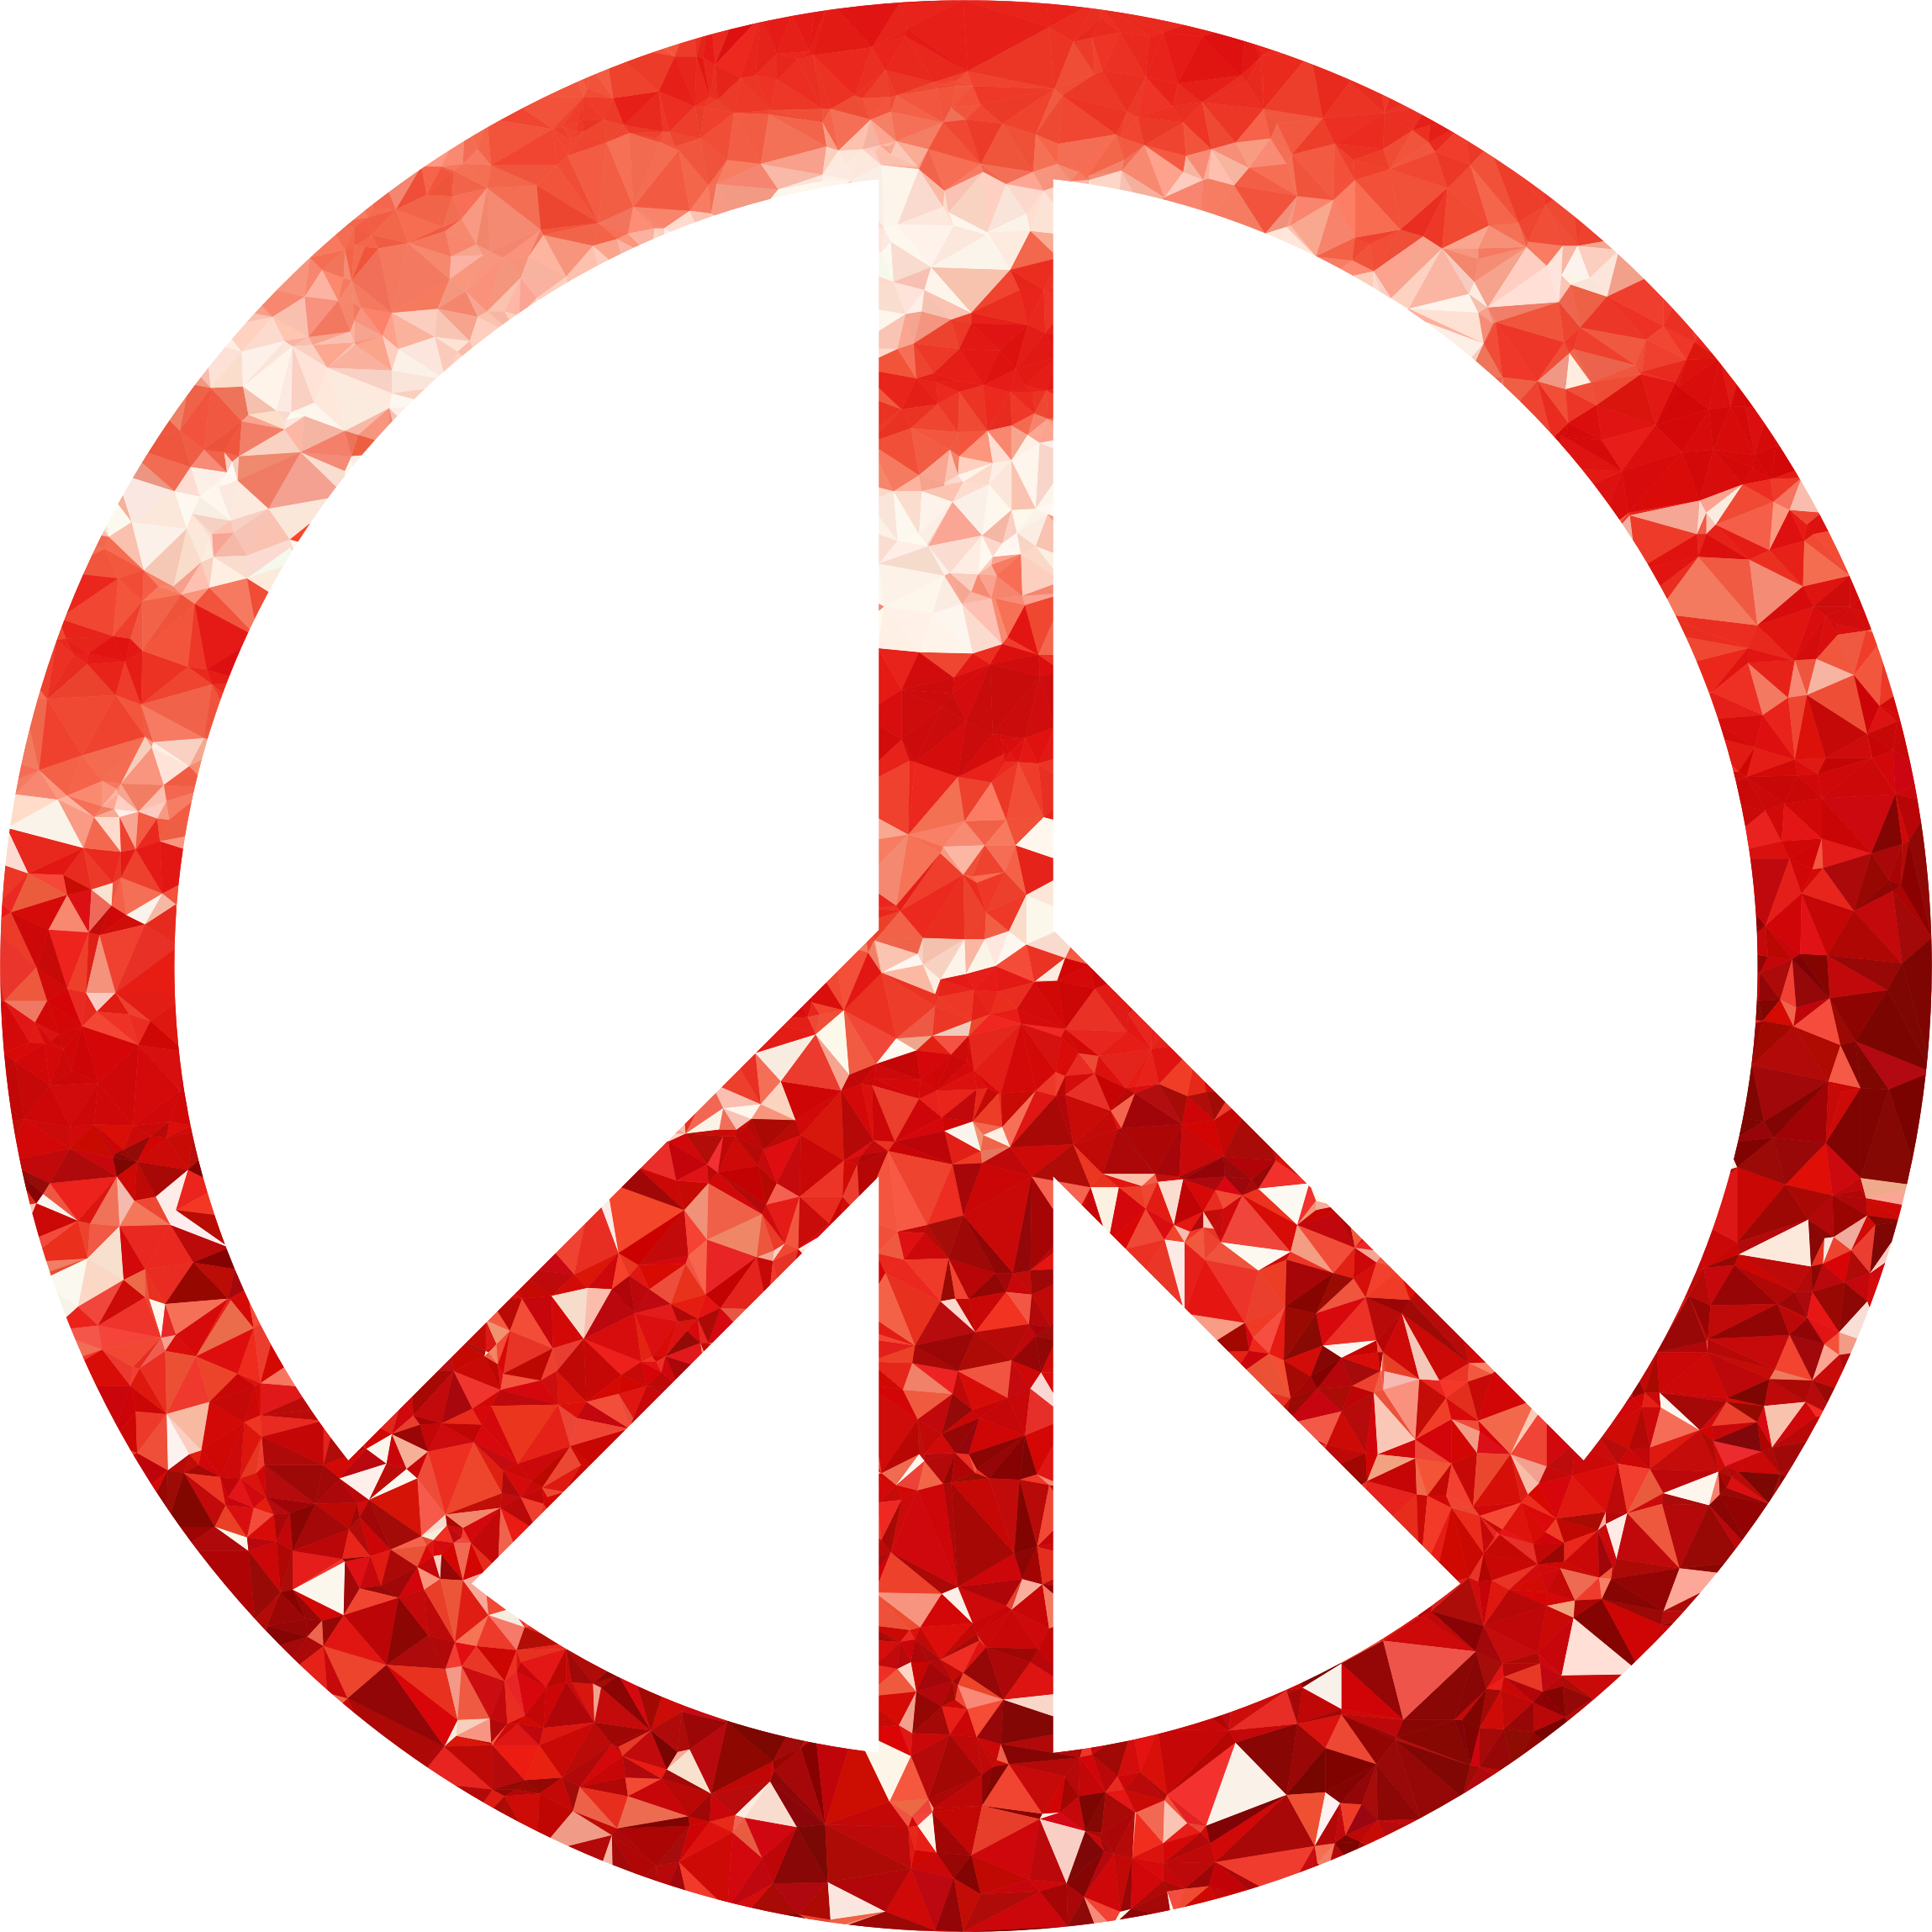 peace clipart icon